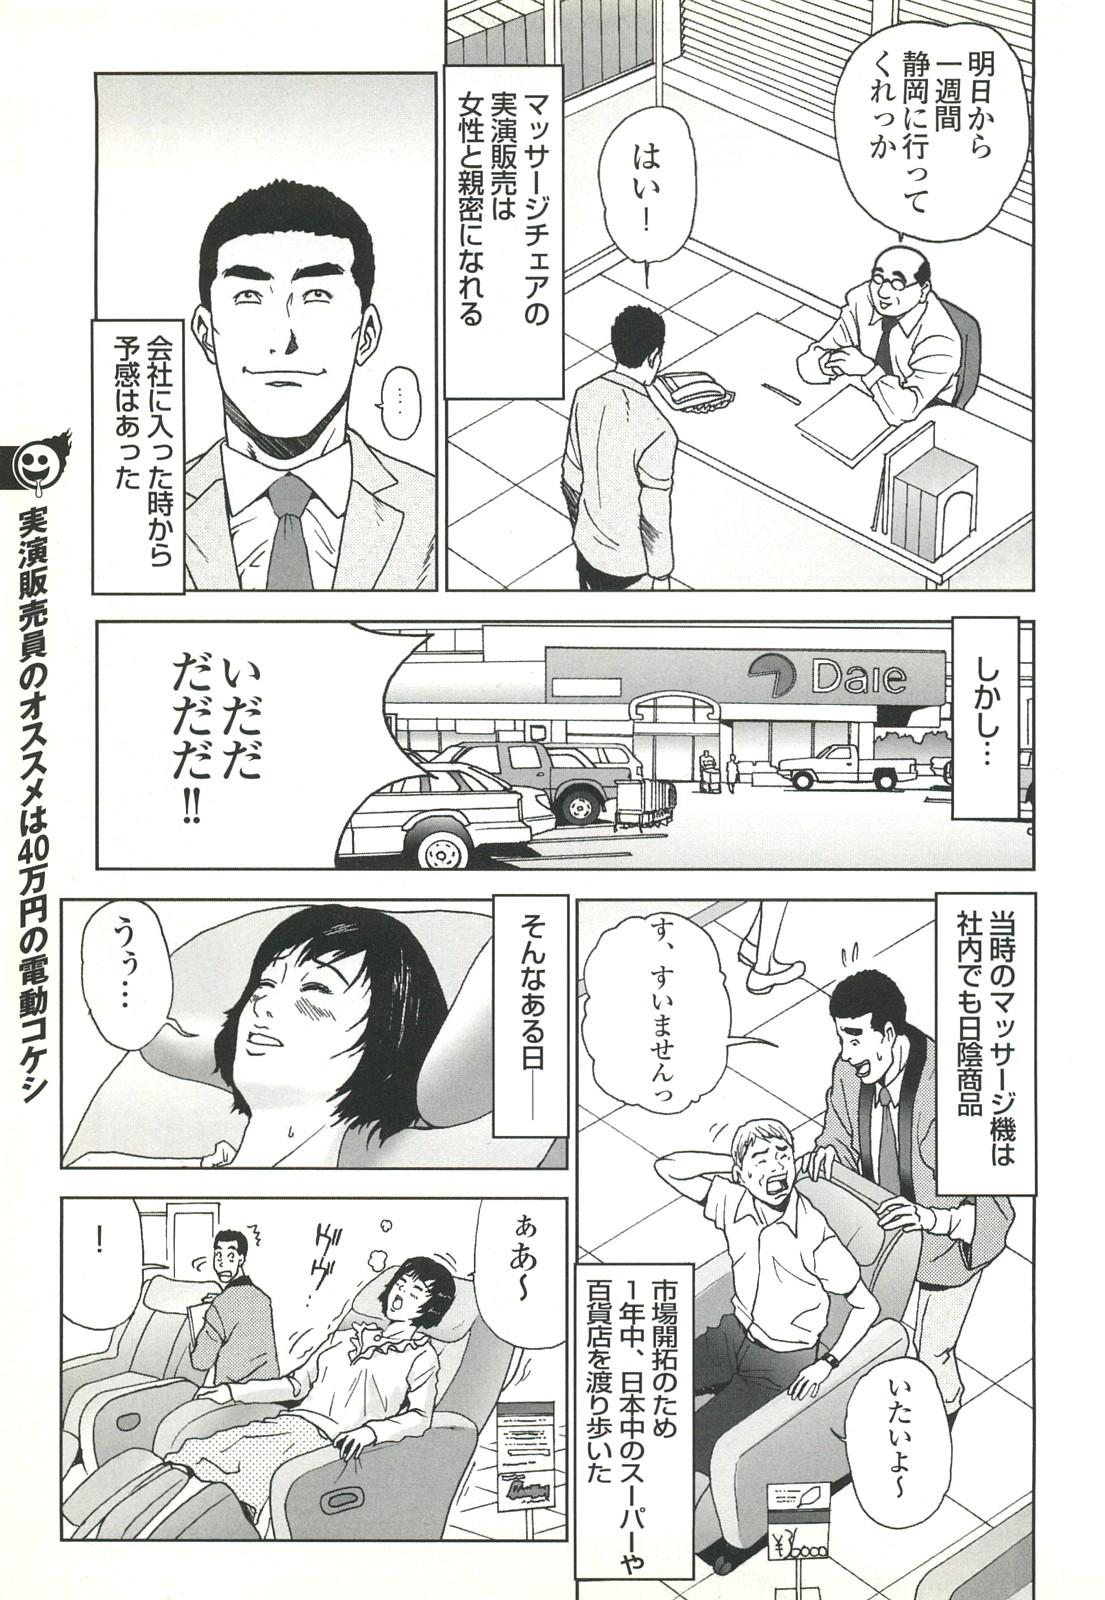 コミック裏モノJAPAN Vol.18 今井のりたつスペシャル号 78